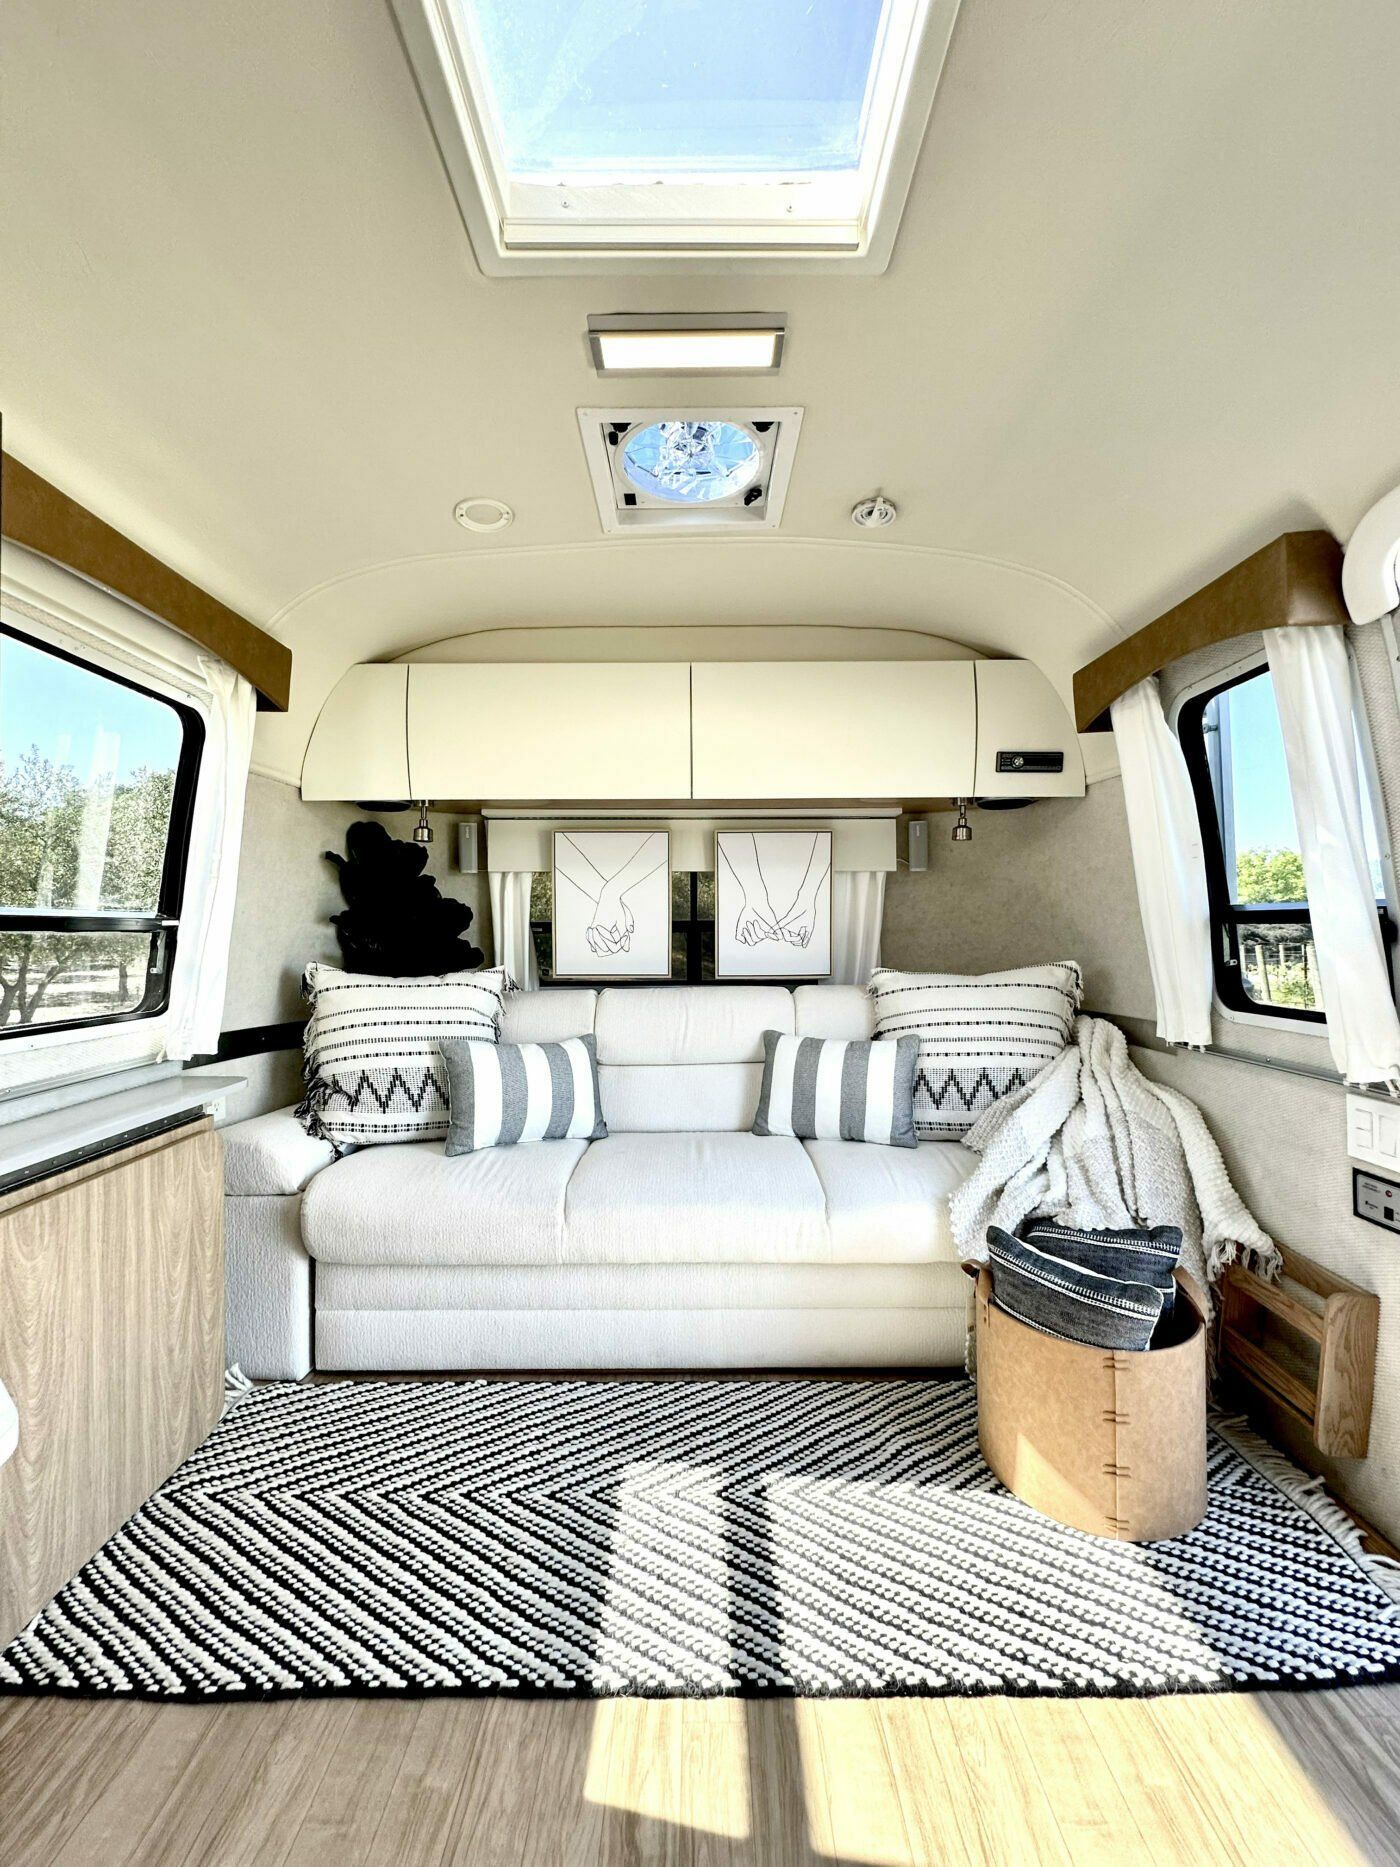 Airstream Interior Design : How to Maximize Space and Style in Your Airstream Interior Design